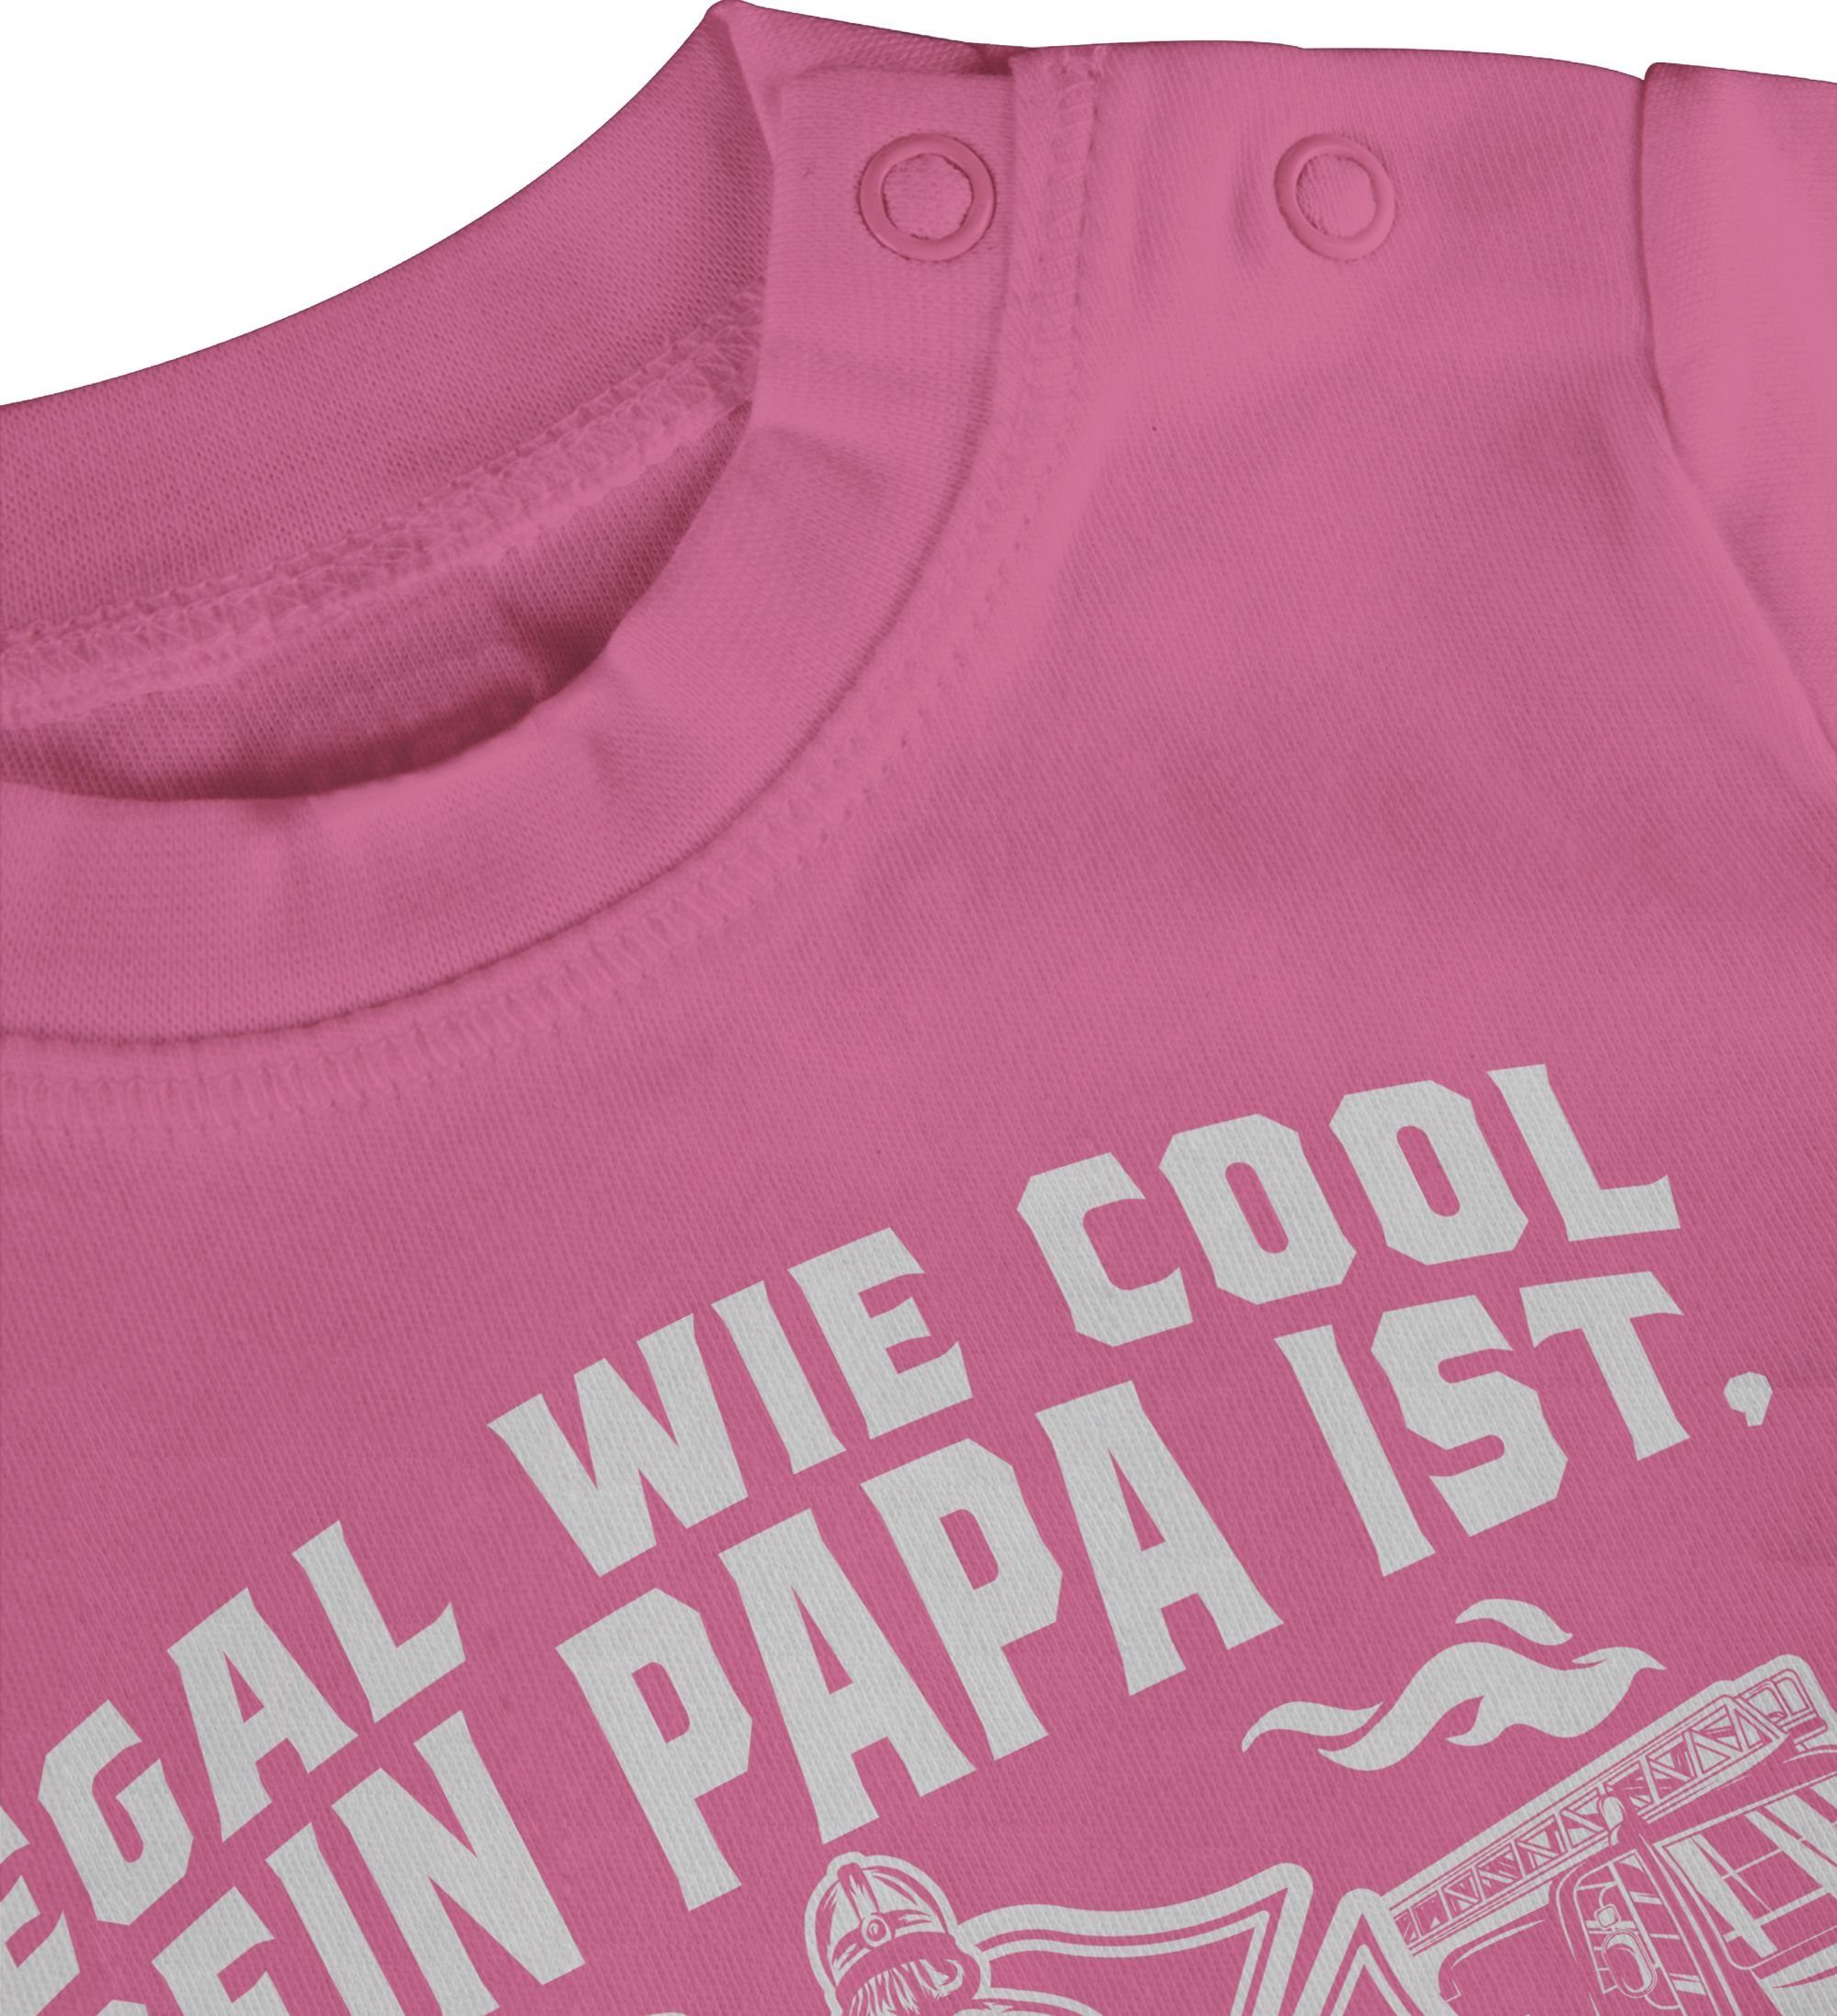 Shirtracer T-Shirt Egal wie ist 1 Mann Pink meiner Feuerwehr Feuerwehr Papa cool dein ist